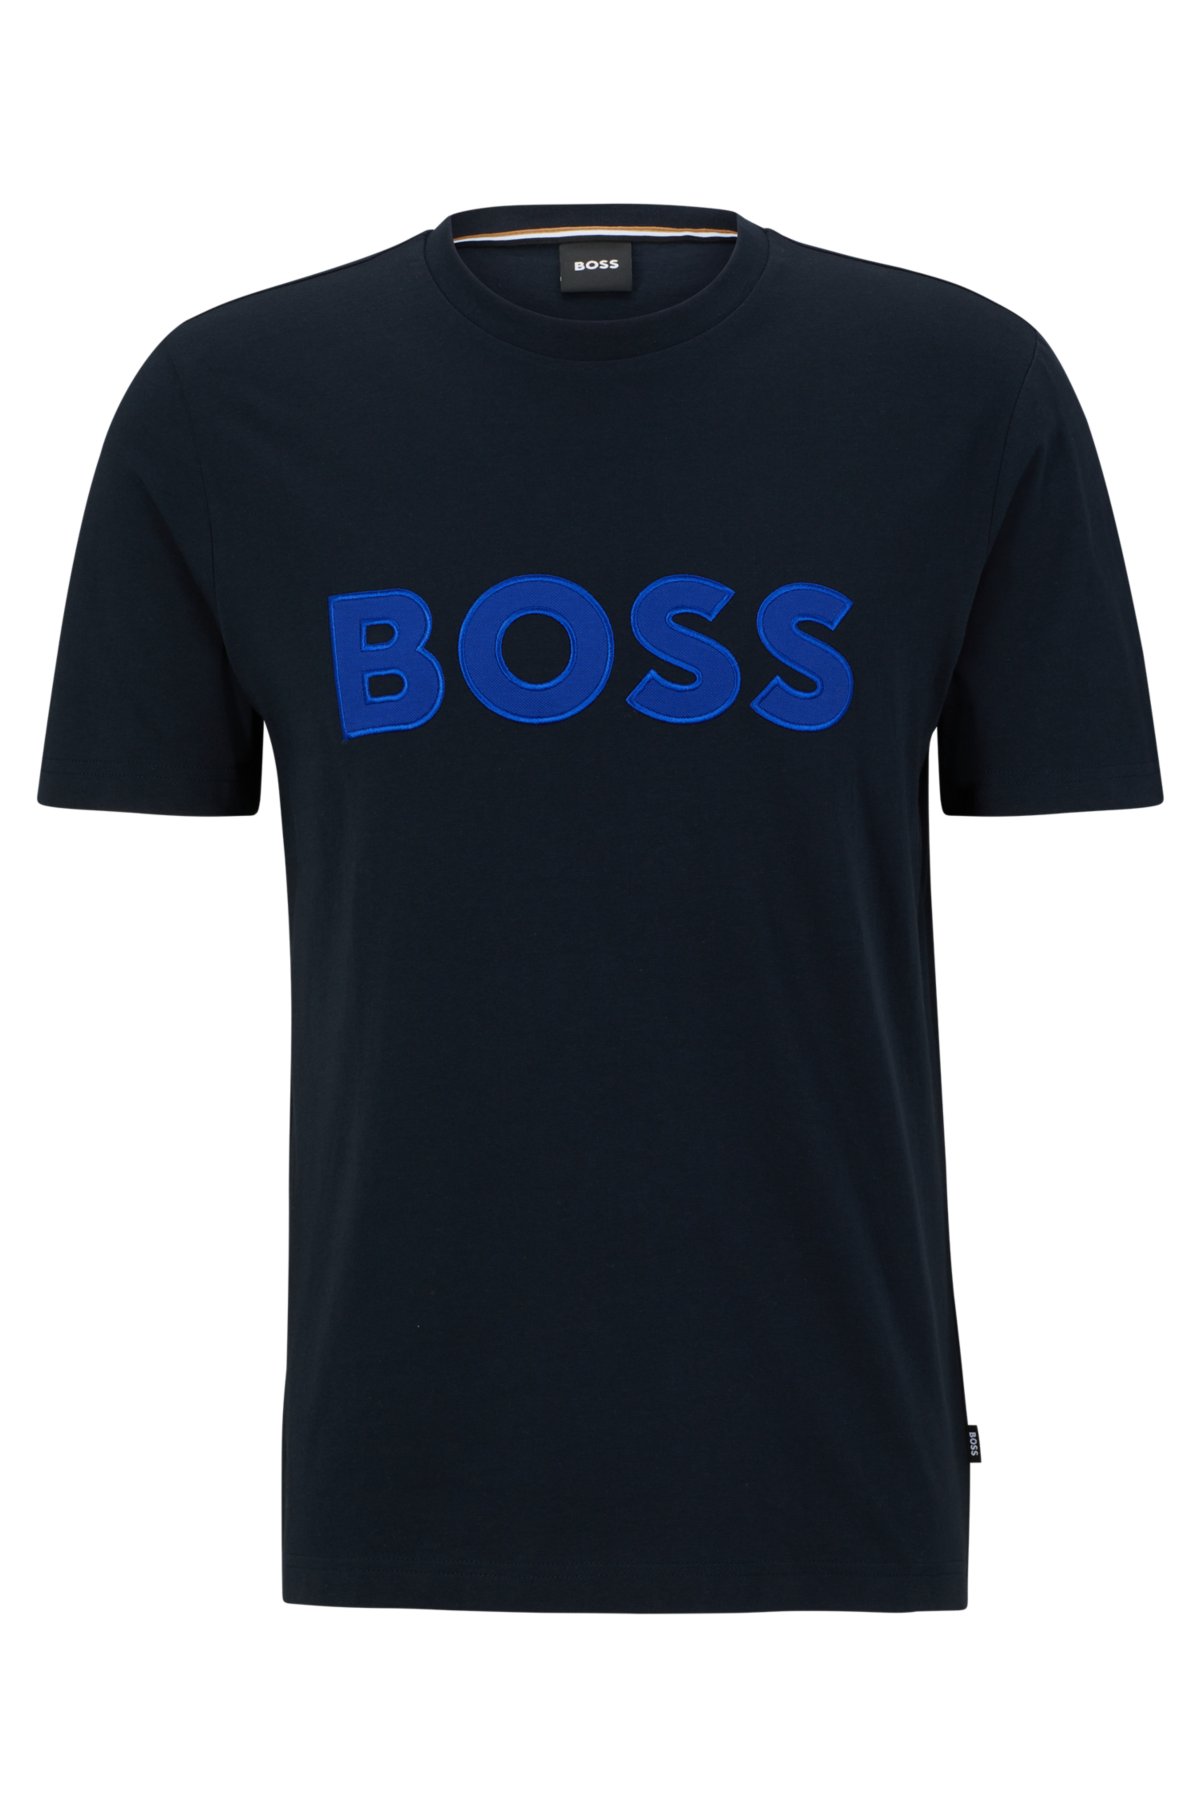 with - Cotton-jersey T-shirt BOSS logo regular-fit appliqué